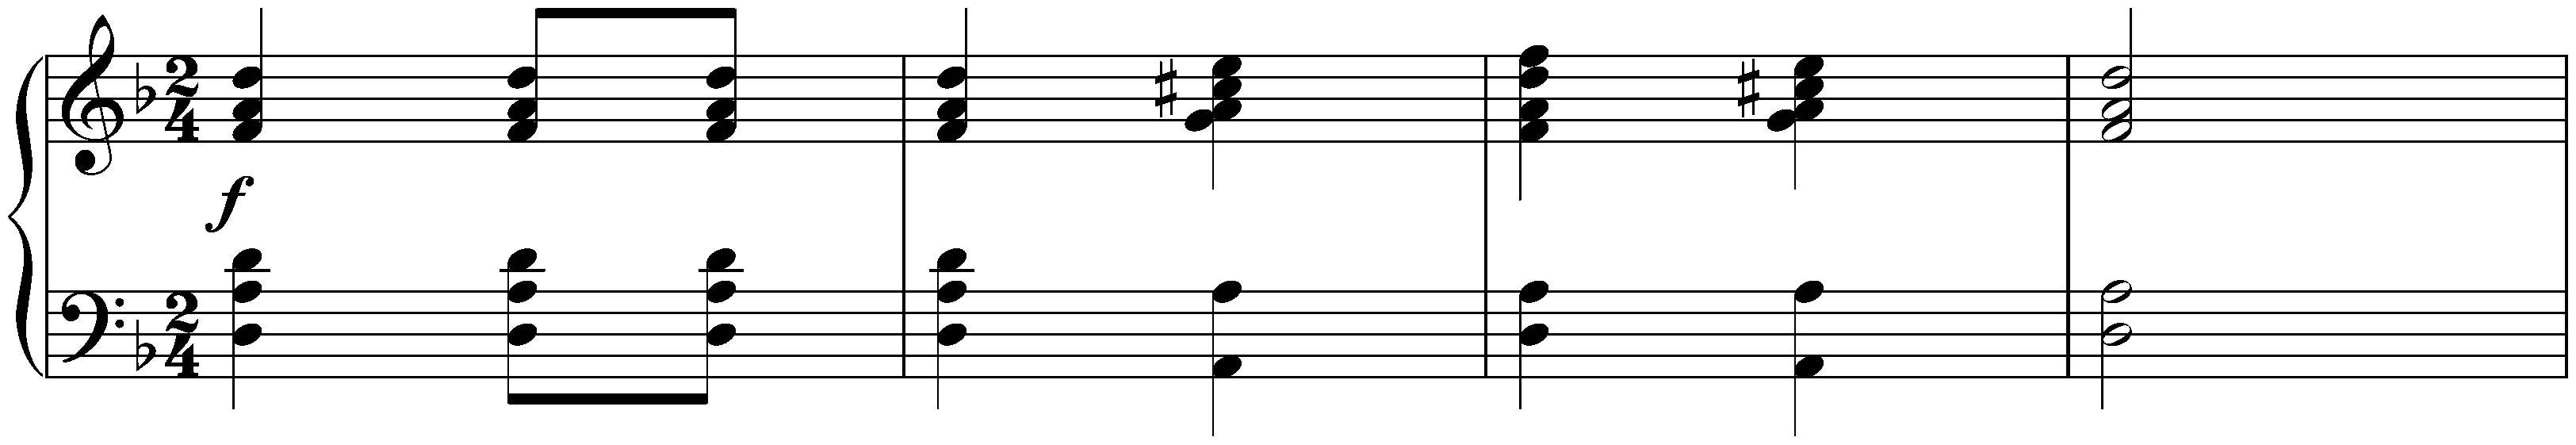 Eight Ecossaises, D 977; 8. D minor